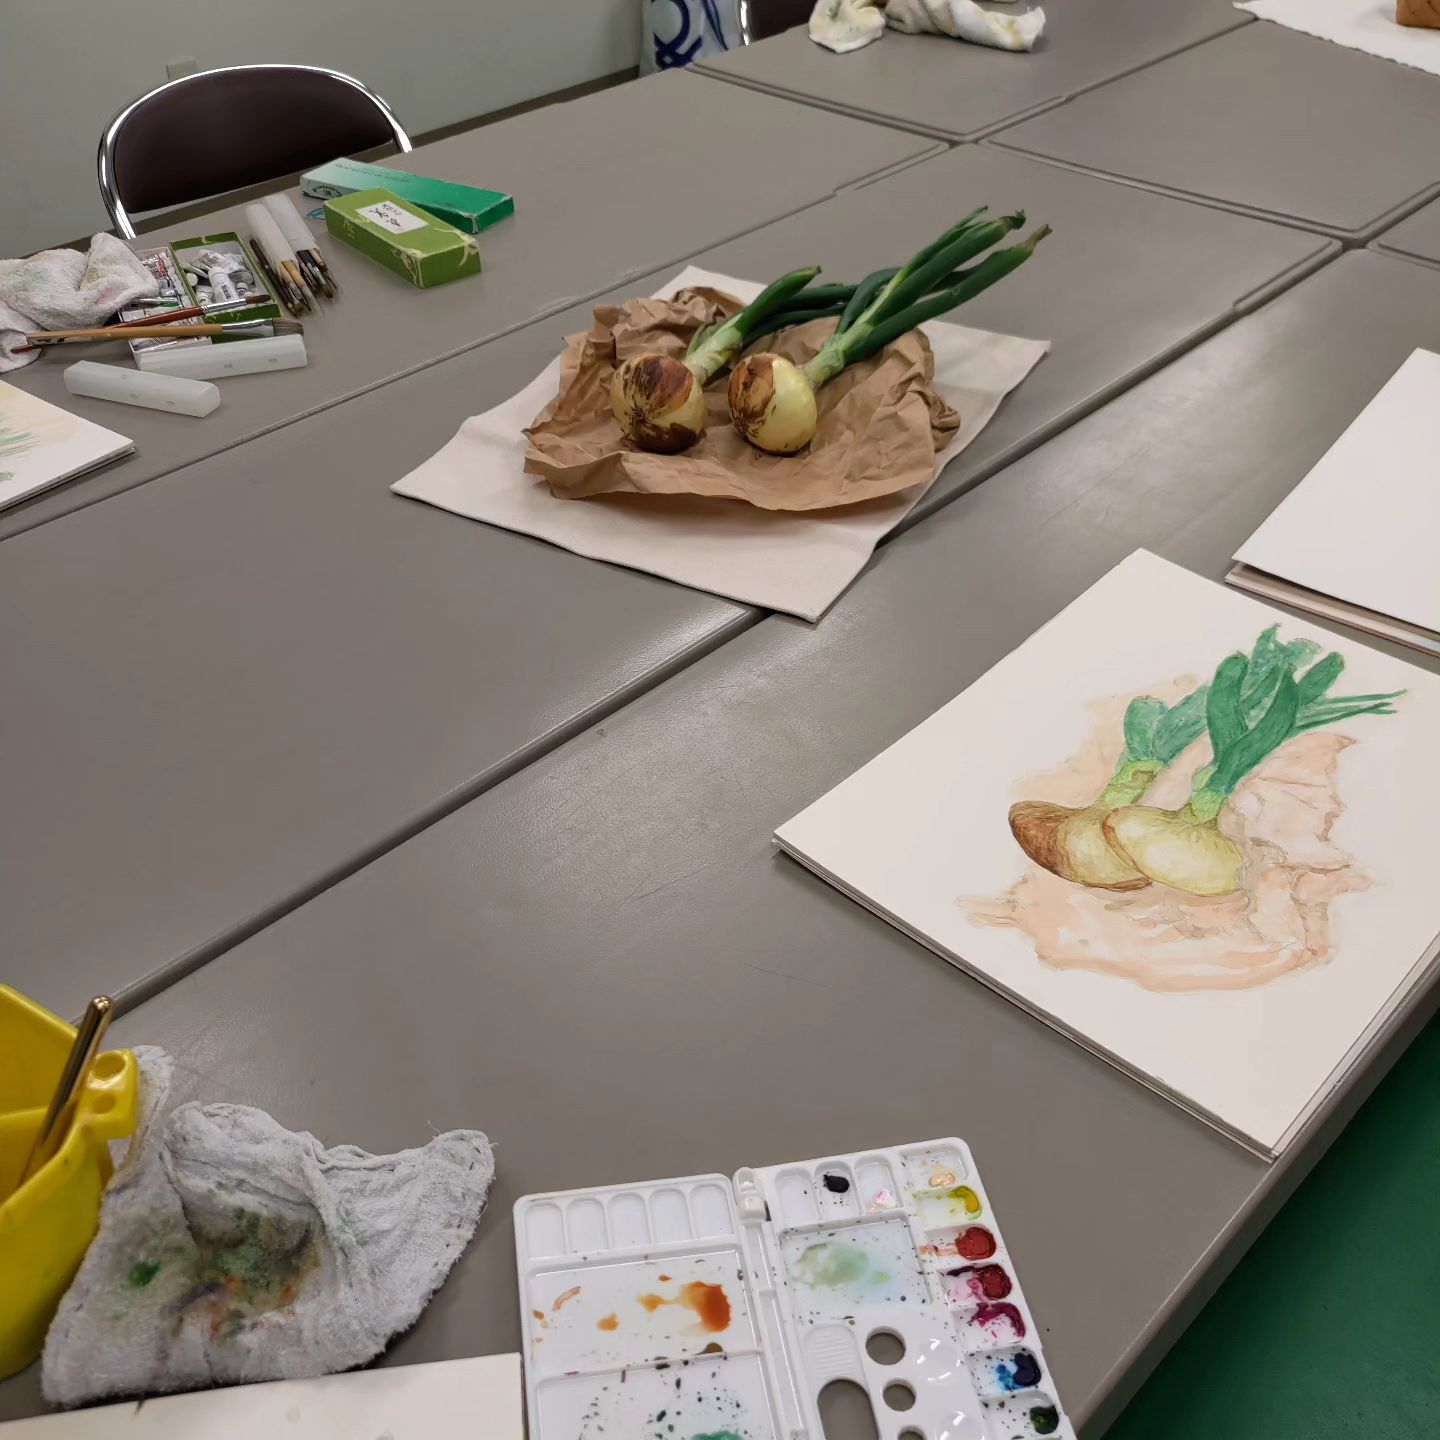 遊心水彩画教室

先週のモチーフは、葉つき玉葱とイチゴ、それと生徒さんに持ってきていただいた水仙や椿のお花でした。
その前はちょうど節分の日だったので、鬼のお面と豆もモチーフに描きました。
できるだけその時期にしかないような、季節感のあるものをモチーフにしようと心がけています。